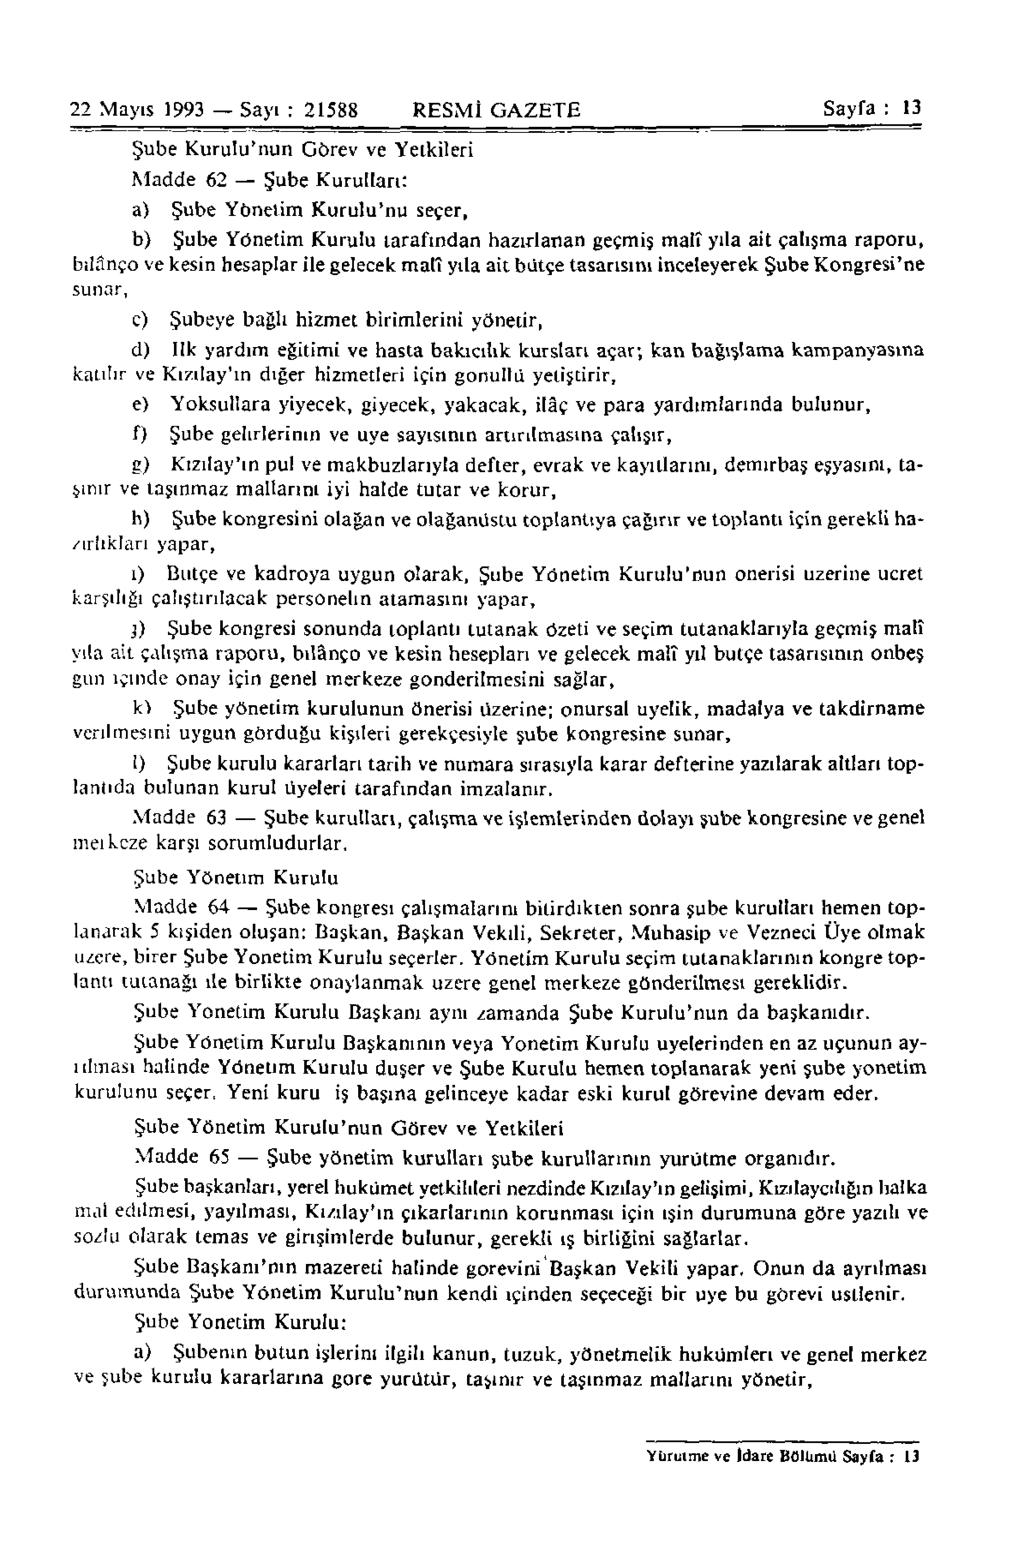 22 Mayıs 1993 Sayı : 21588 RESMİ GAZETE Sayfa : 13 Şube Kurulu'nun Görev ve Yetkileri Madde 62 Şube Kurulları: a) Şube Yönetim Kurulu'nu seçer, b) Şube Yönetim Kurulu tarafından hazırlanan geçmiş